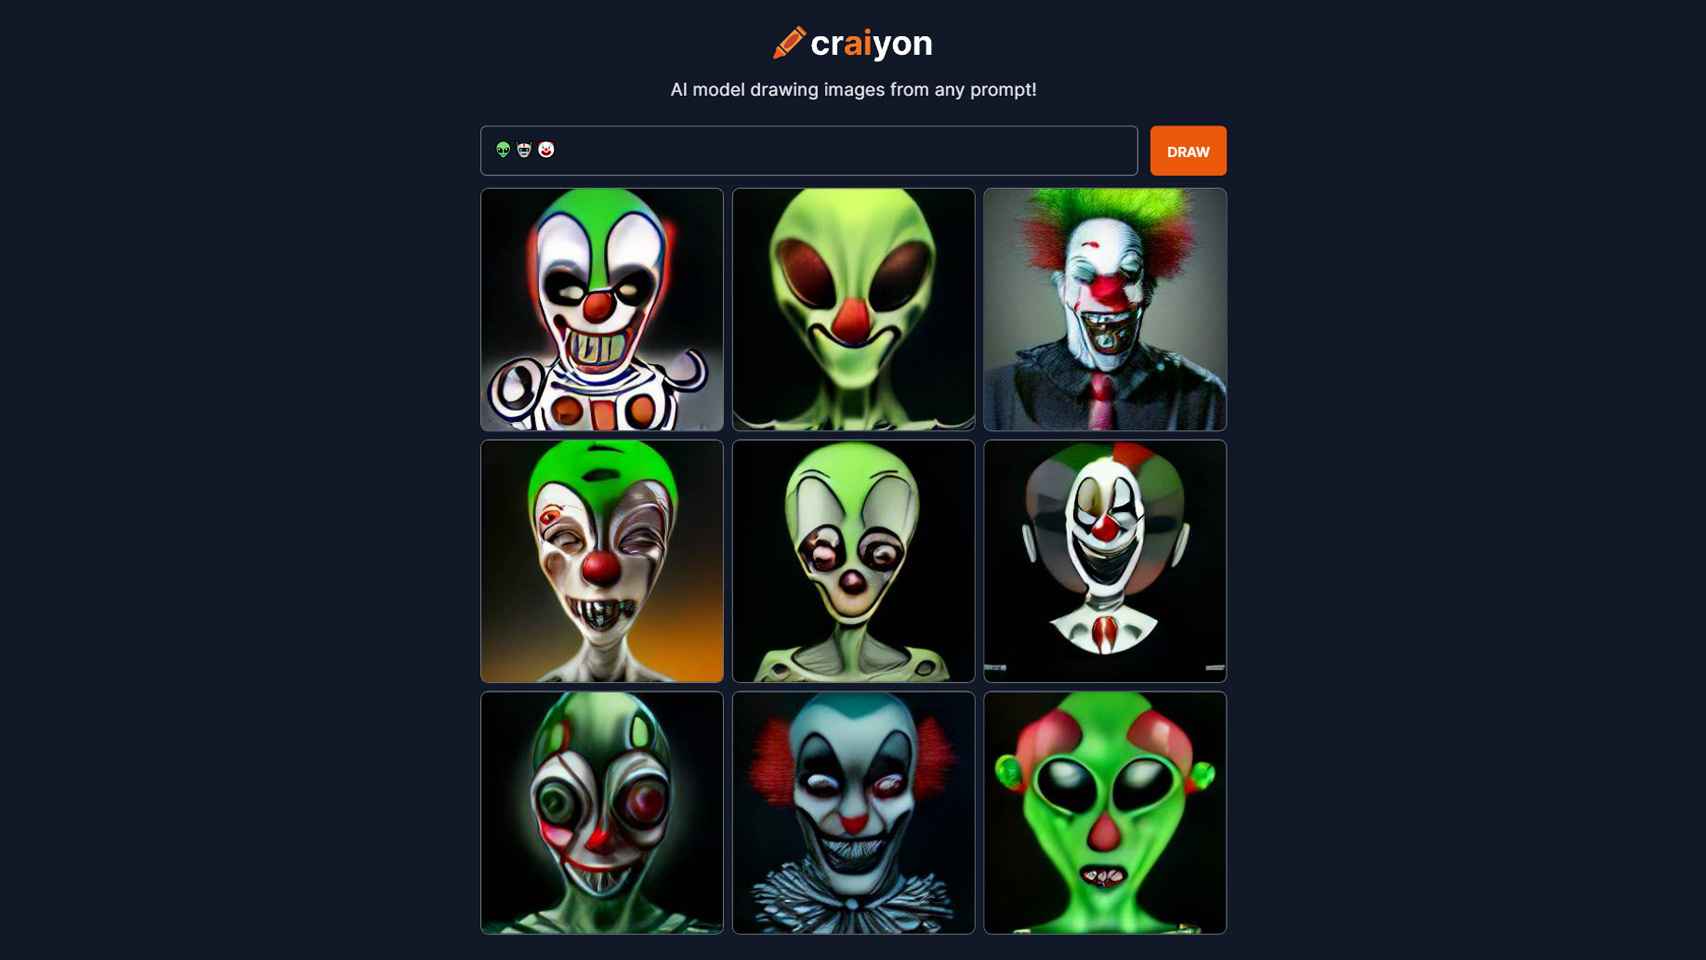 Imágenes generadas por Craiyon a partir de emojis de extraterrestre, robot y payaso.